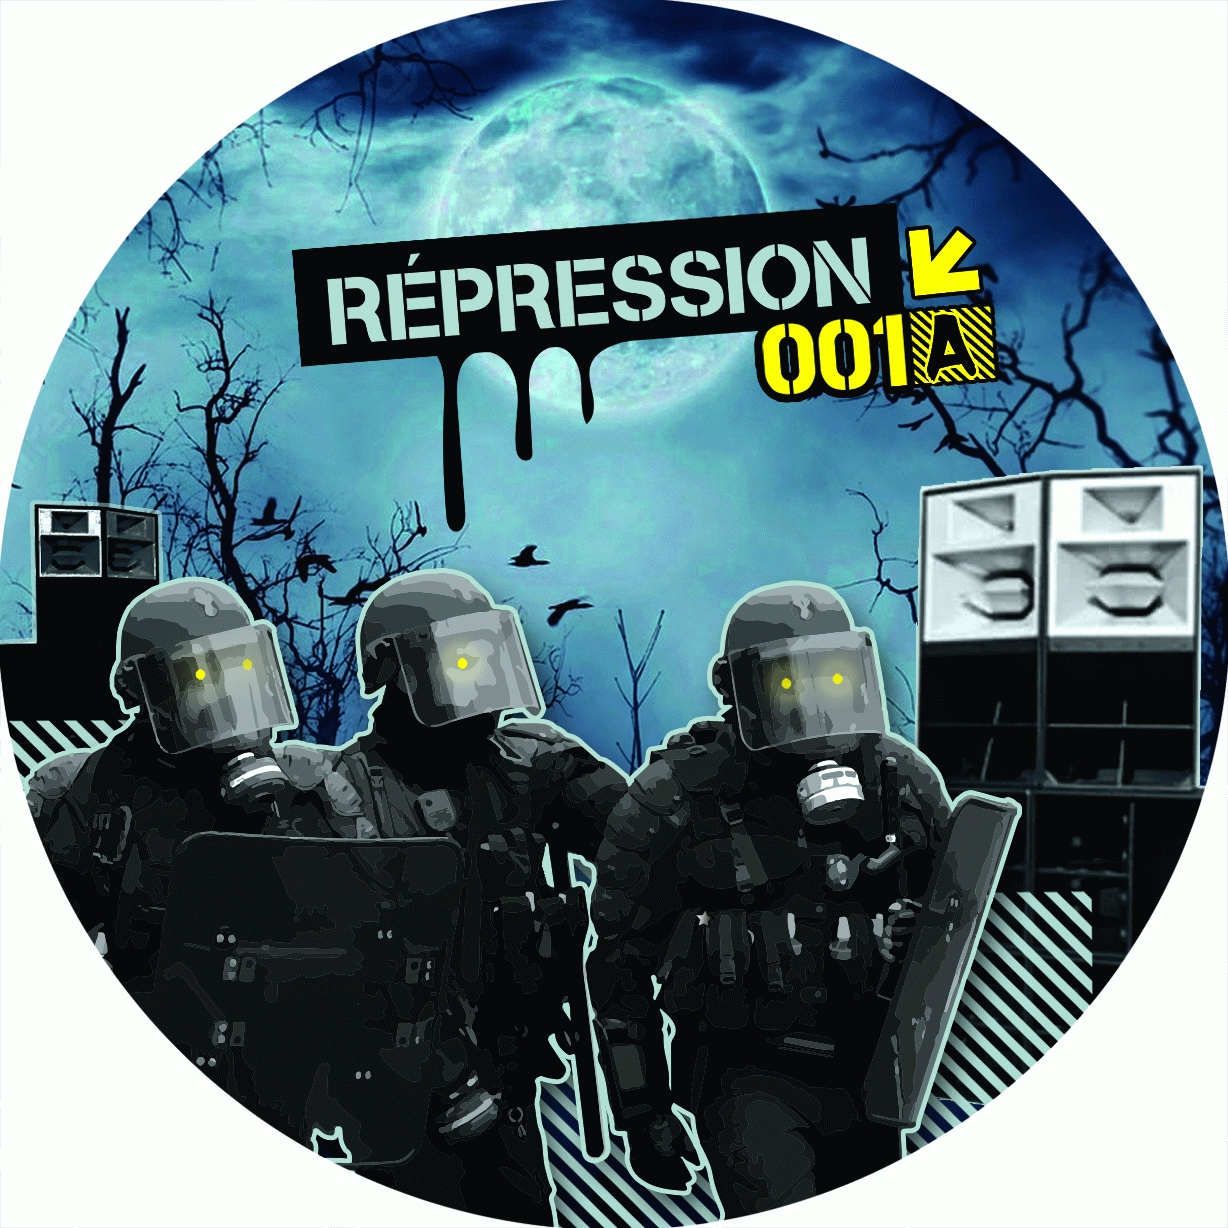 Repression 001 (precommande - dispo le 09-02)